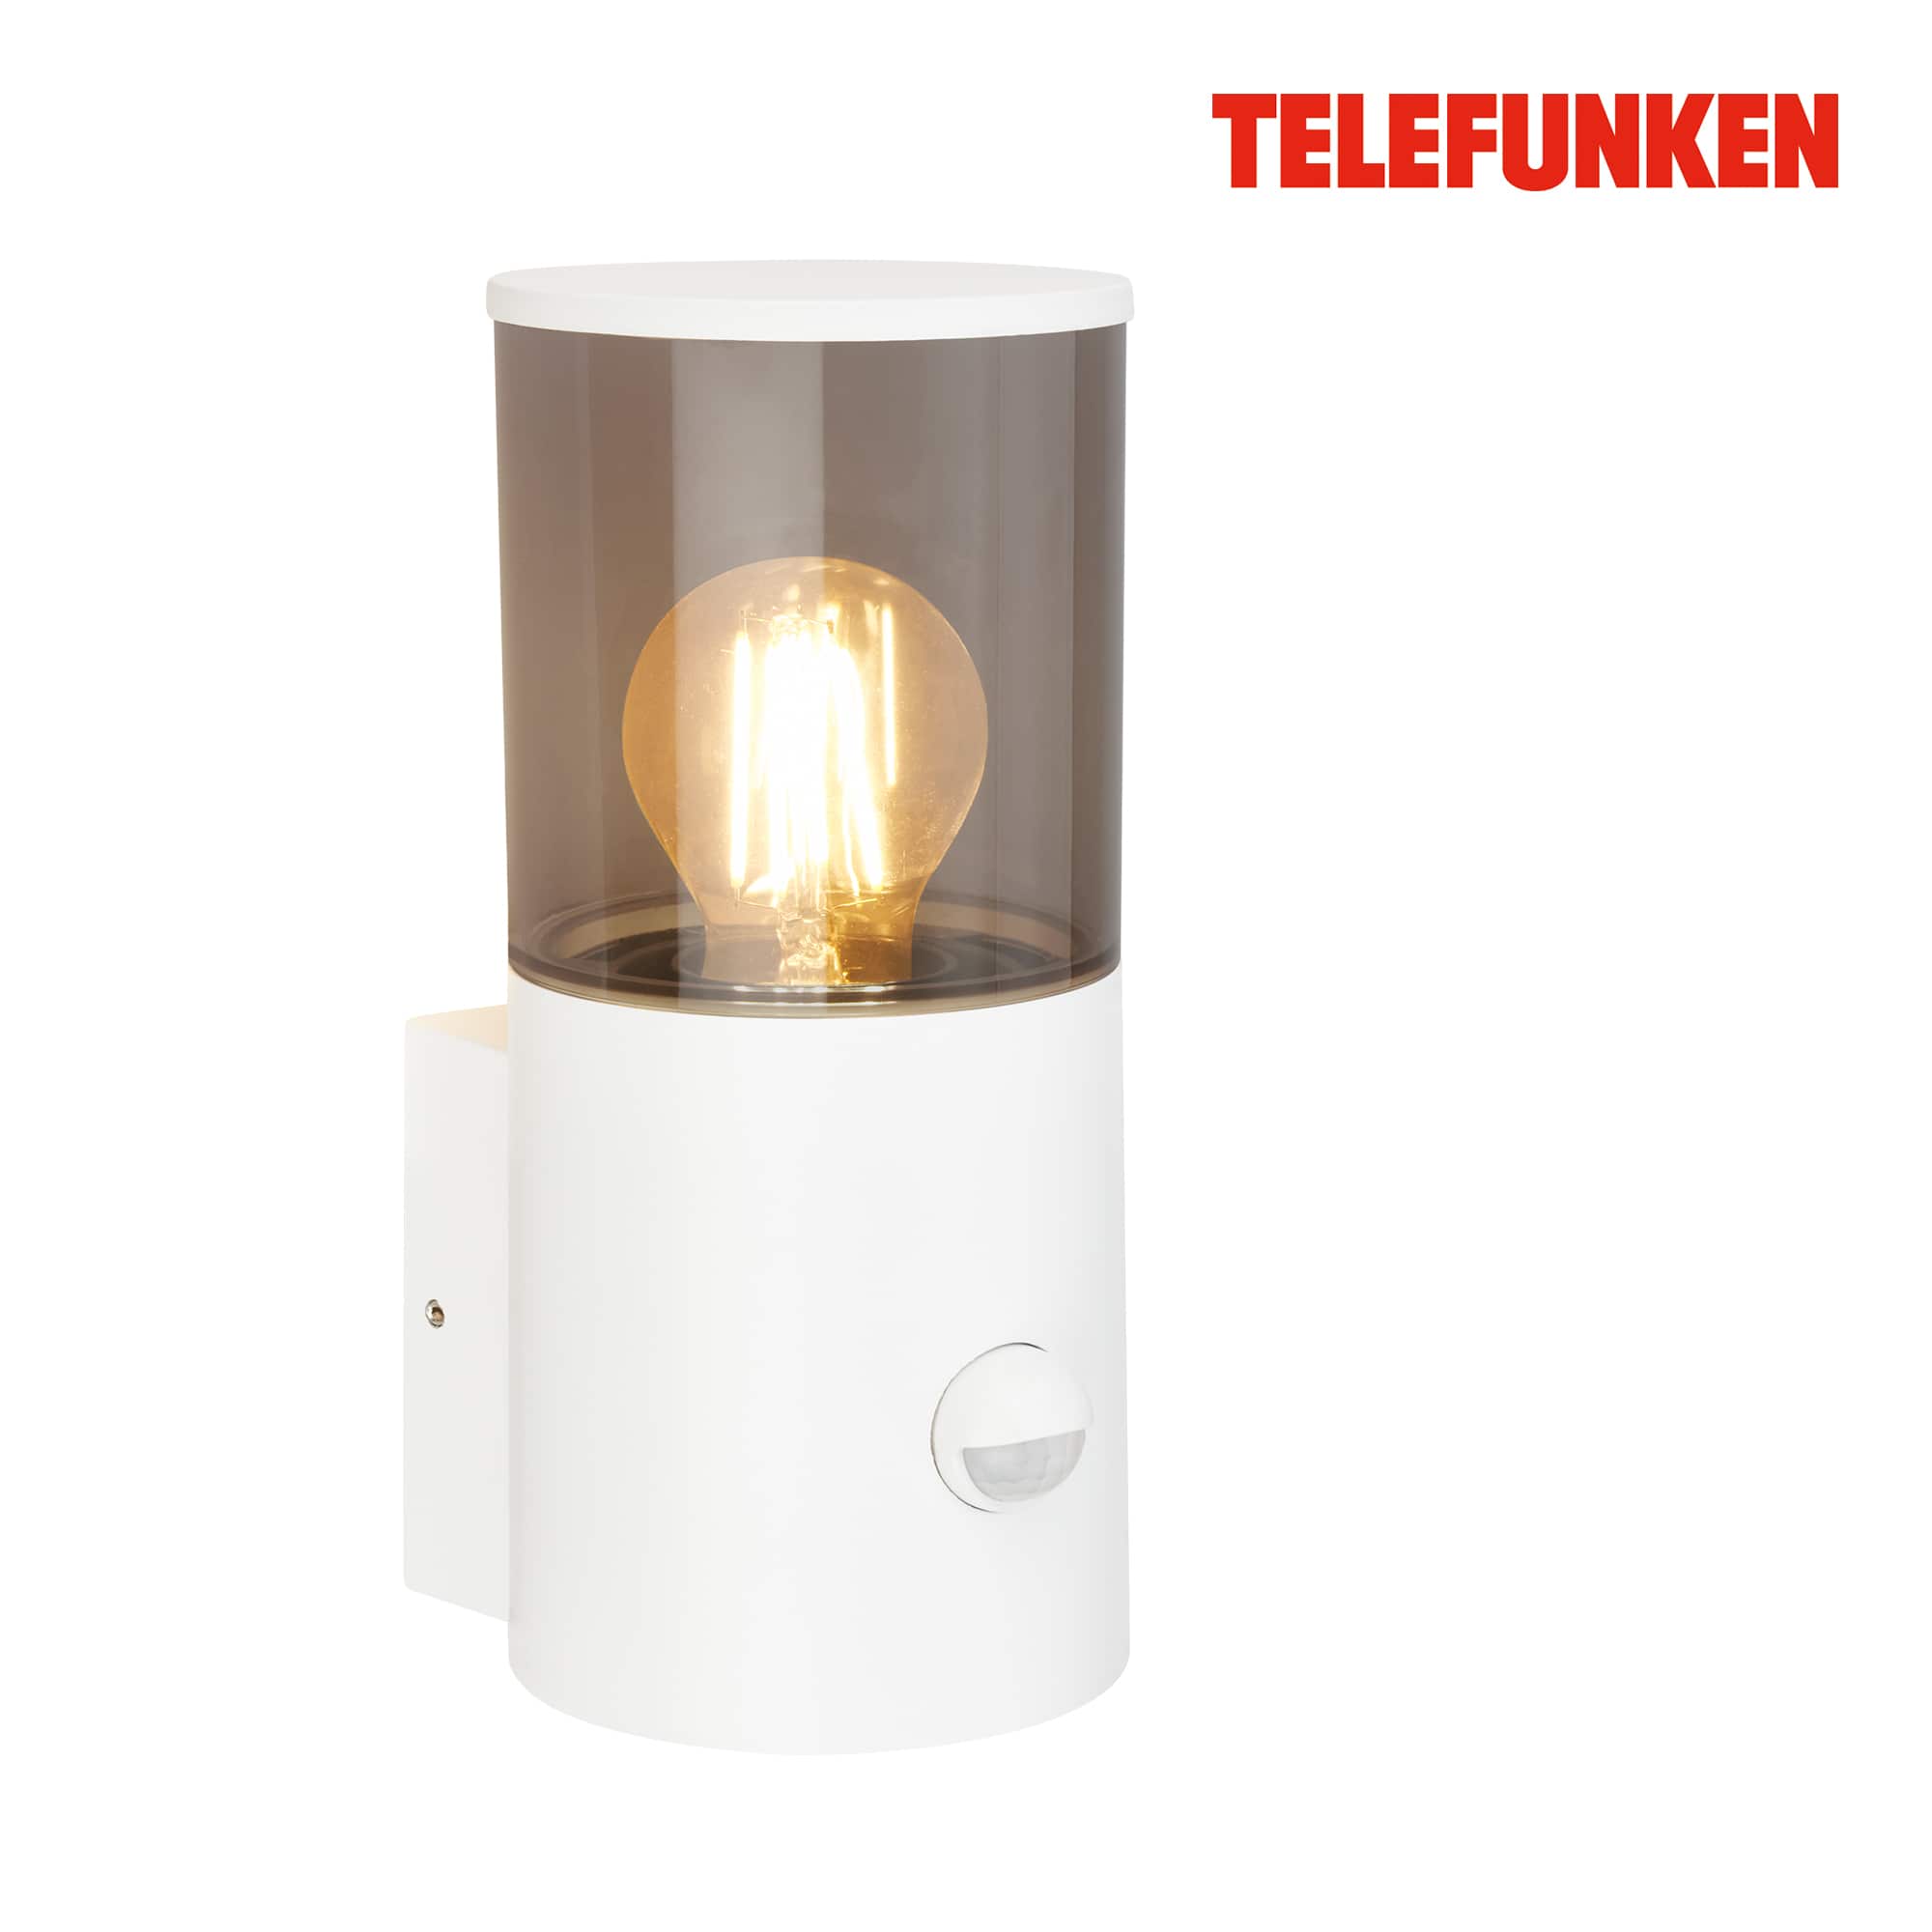 Lampada da parete Telefunken LED, rilevatore di movimento, protezione dagli spruzzi d'acqua